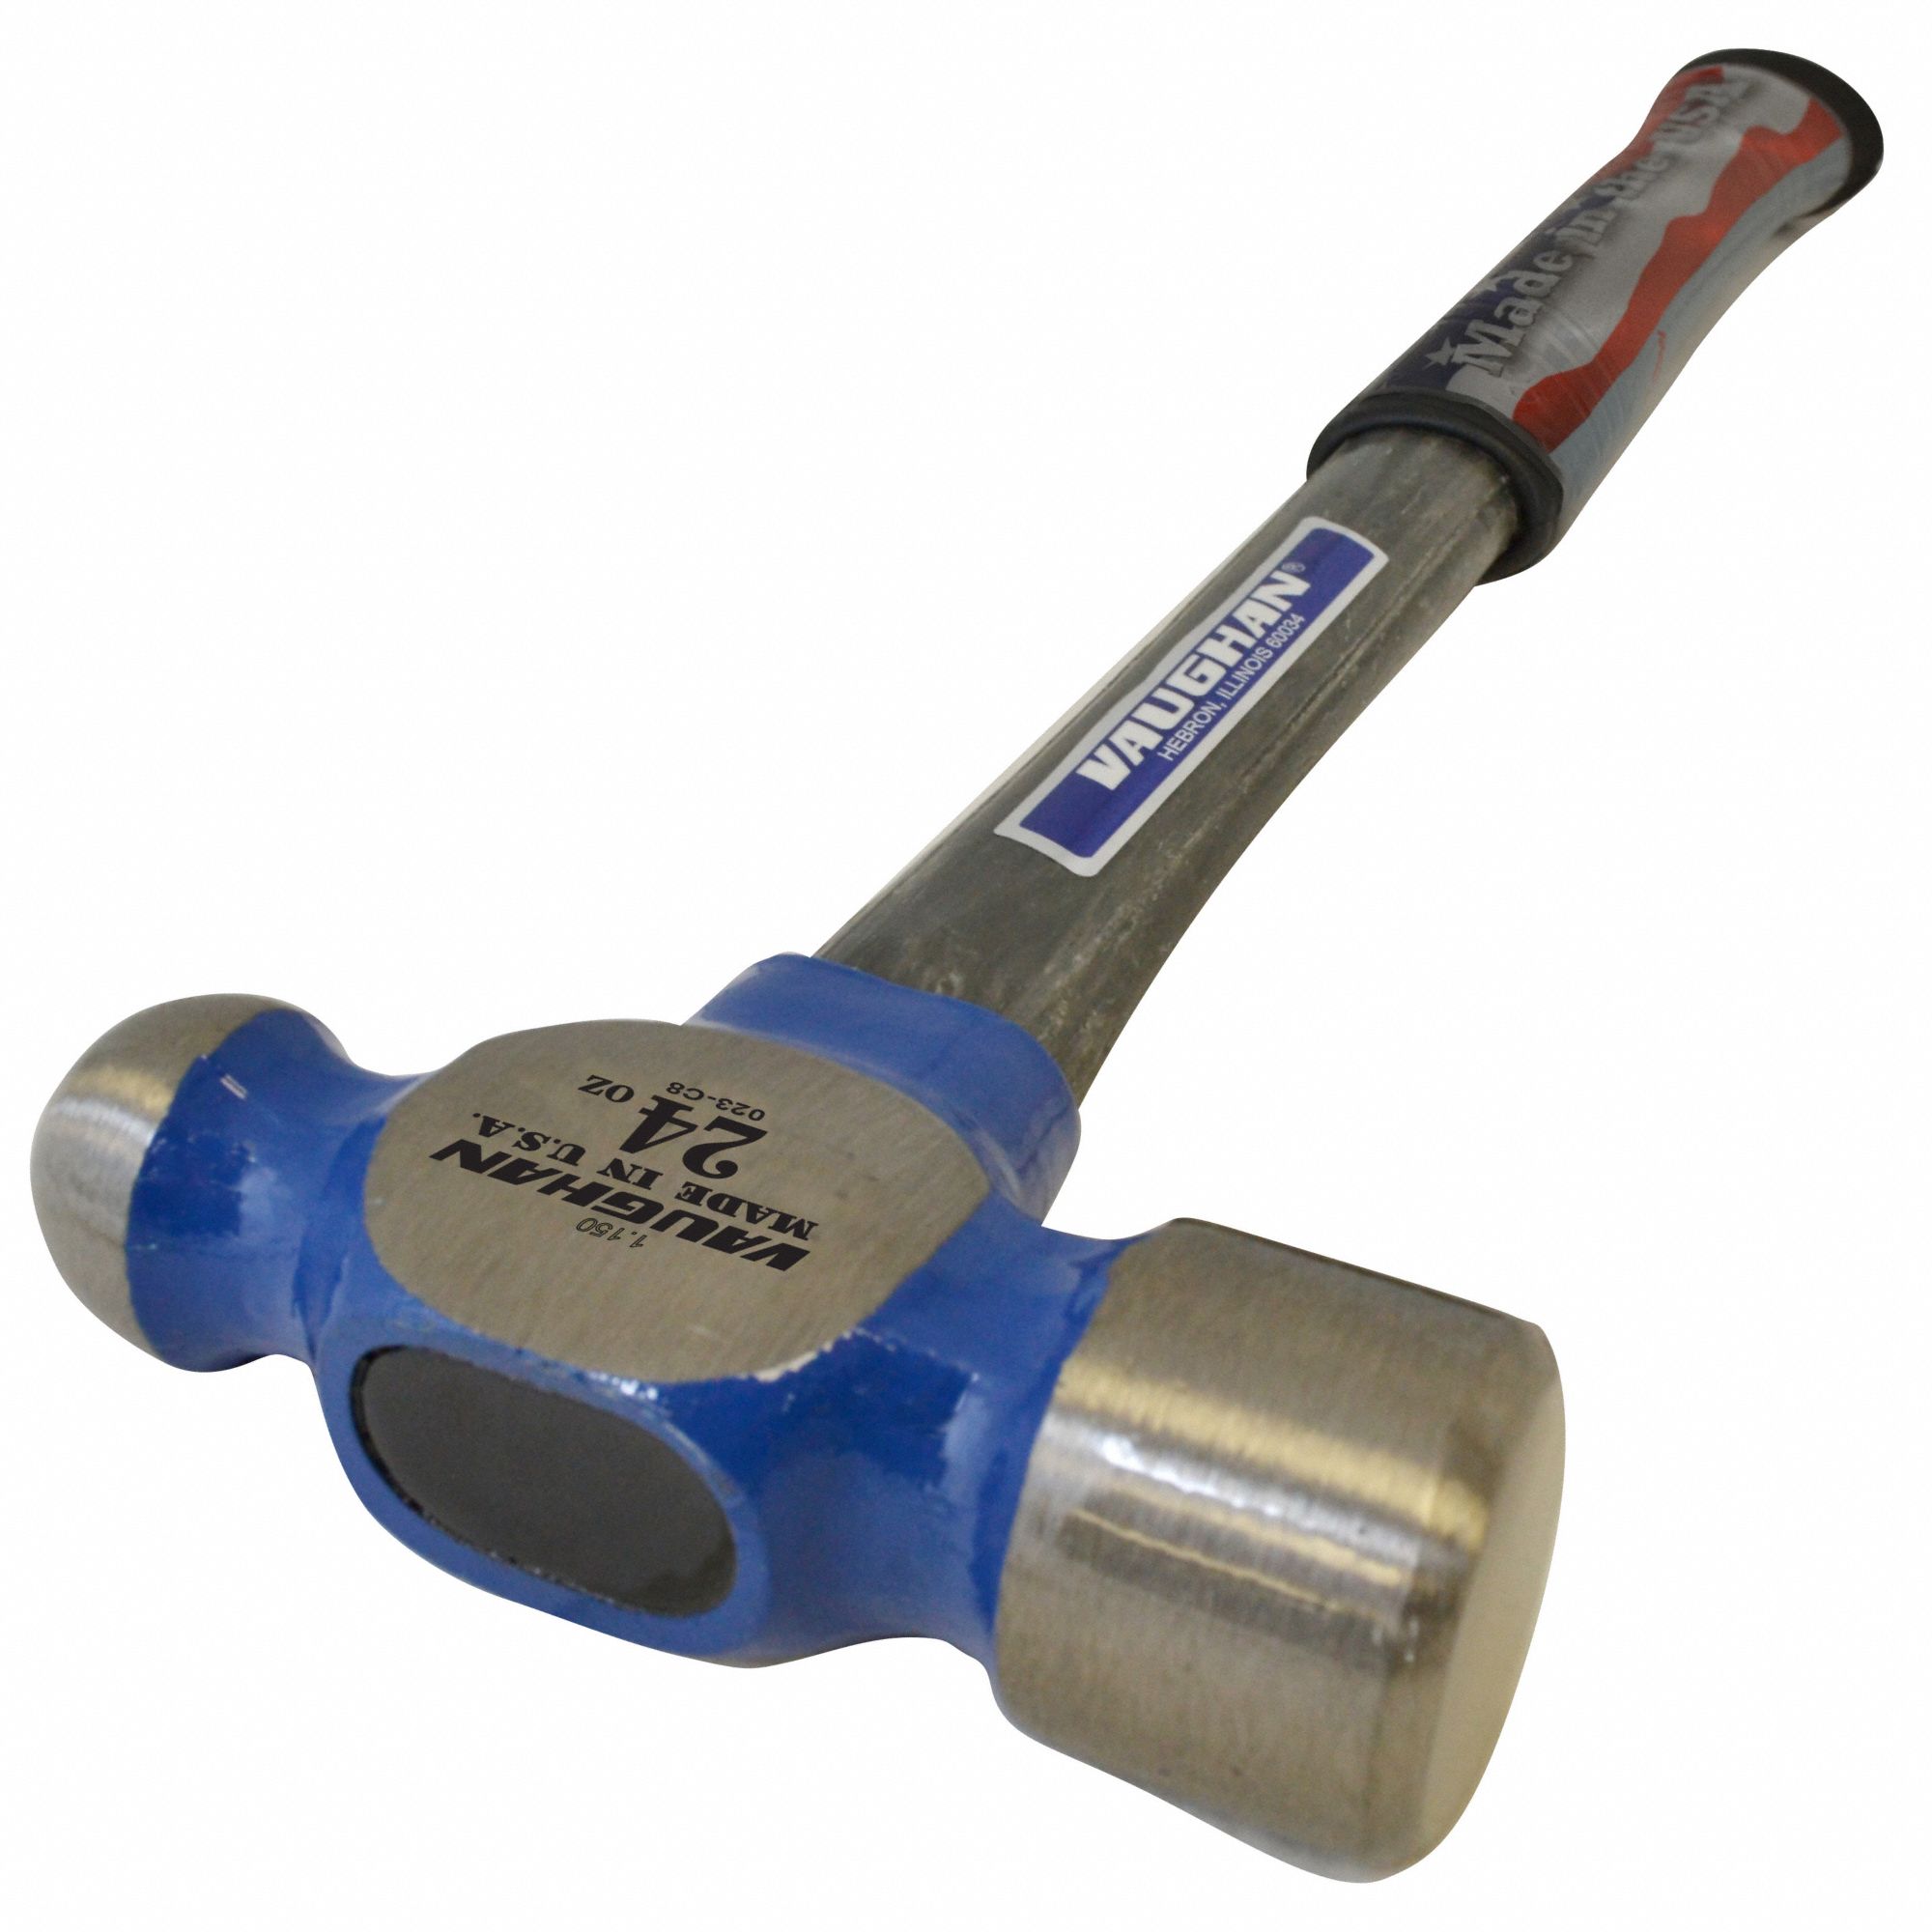 Teng 24oz Ball Pein Hammer with Fibreglass Shaft Handle HMBP24 